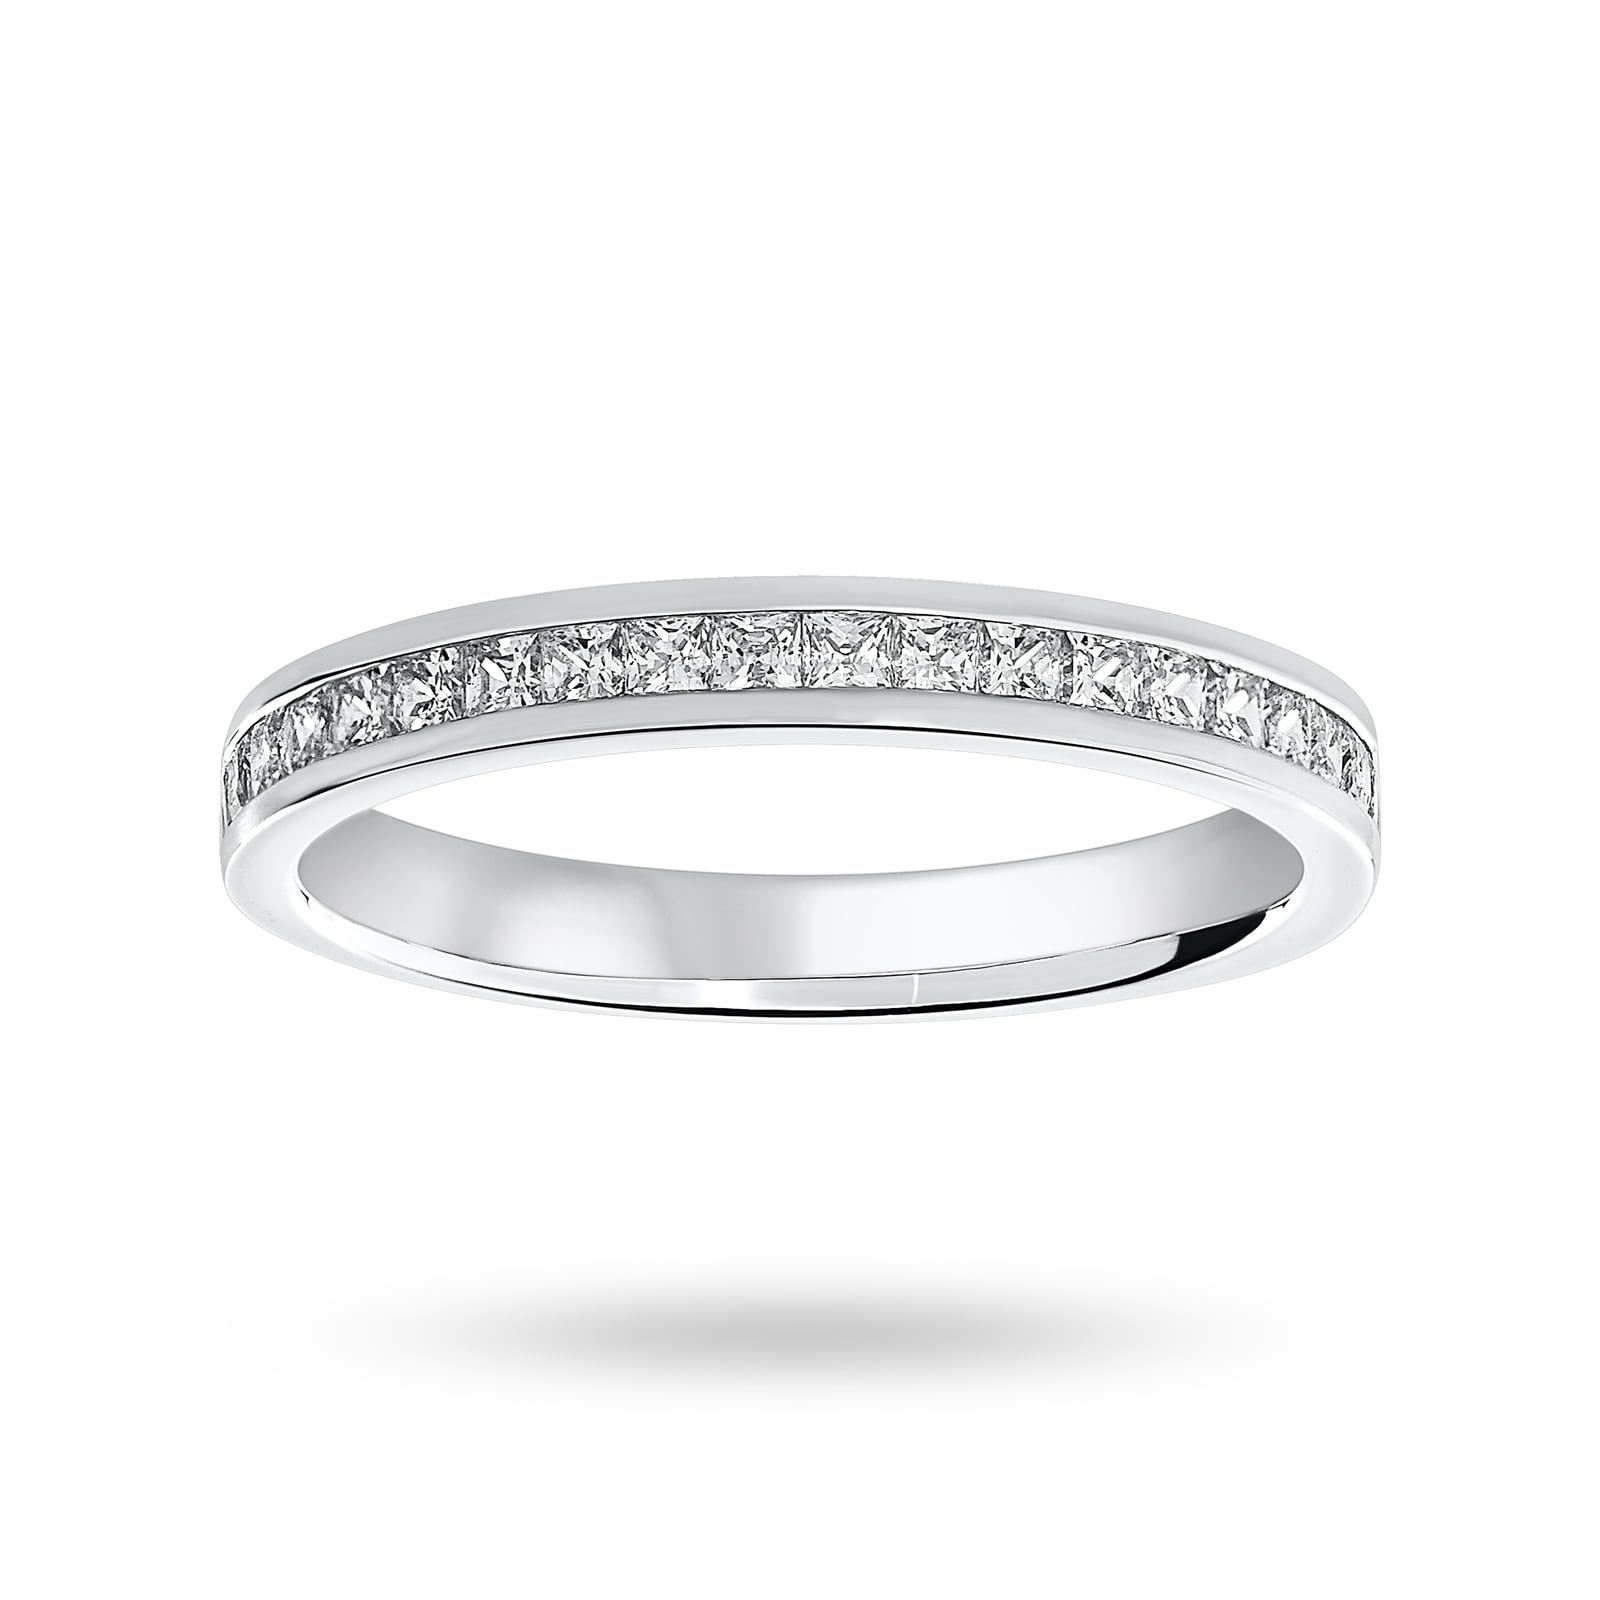 18 Carat White Gold 0.50 Carat Princess Cut Half Eternity Ring - Ring Size O